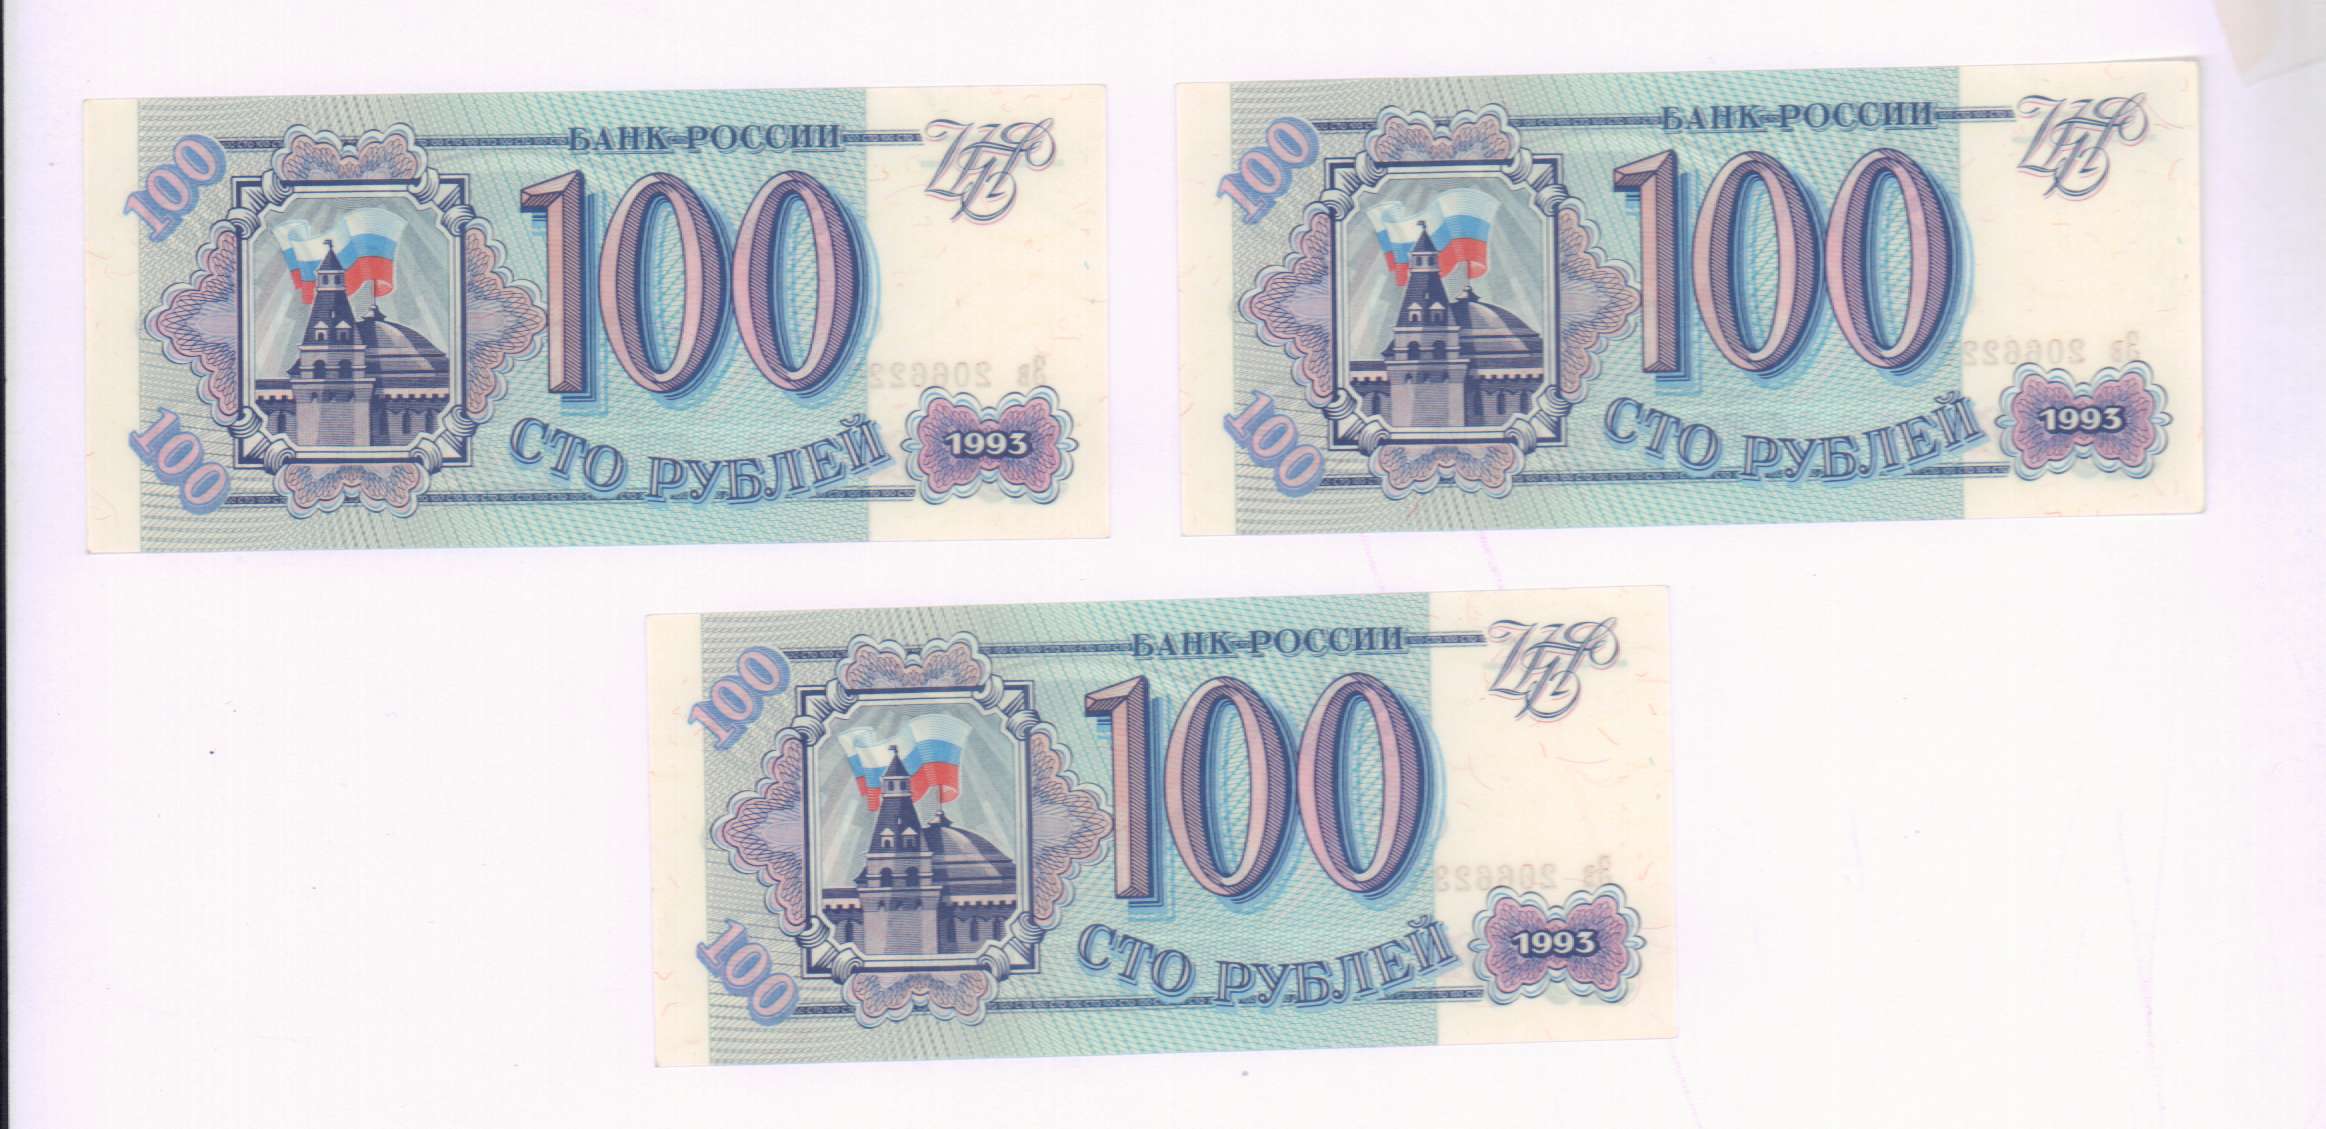 Билет банка россии это. 100 Рублей 1993 Аверс-Аверс. Российские 100 рублей 1993. 100 Рублей 3 штуки. Старые СТО рублей 1993.